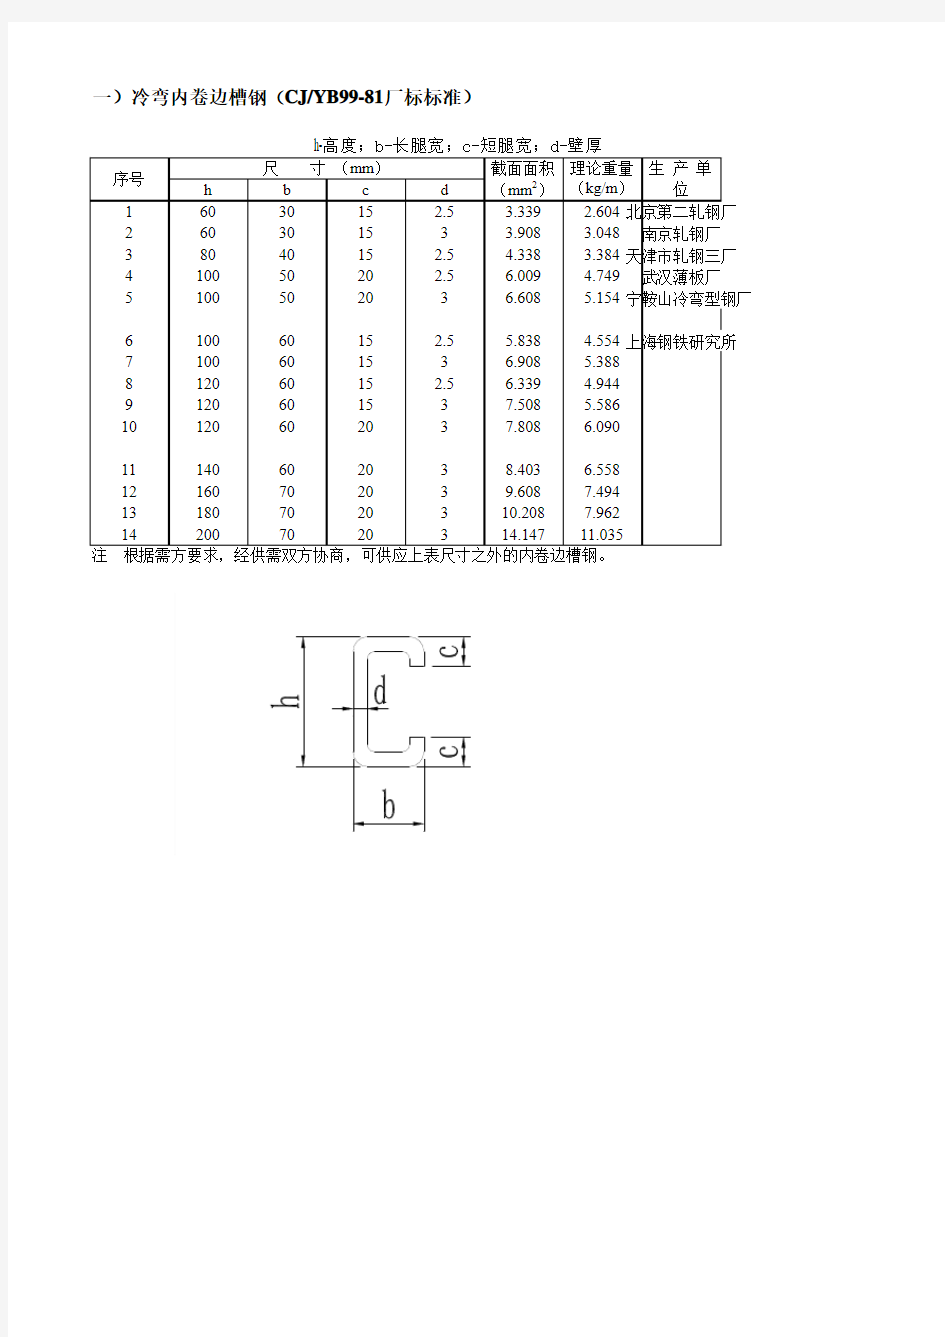 冷弯内卷边槽钢(CJYB99-81厂标标准)理论重量对照表